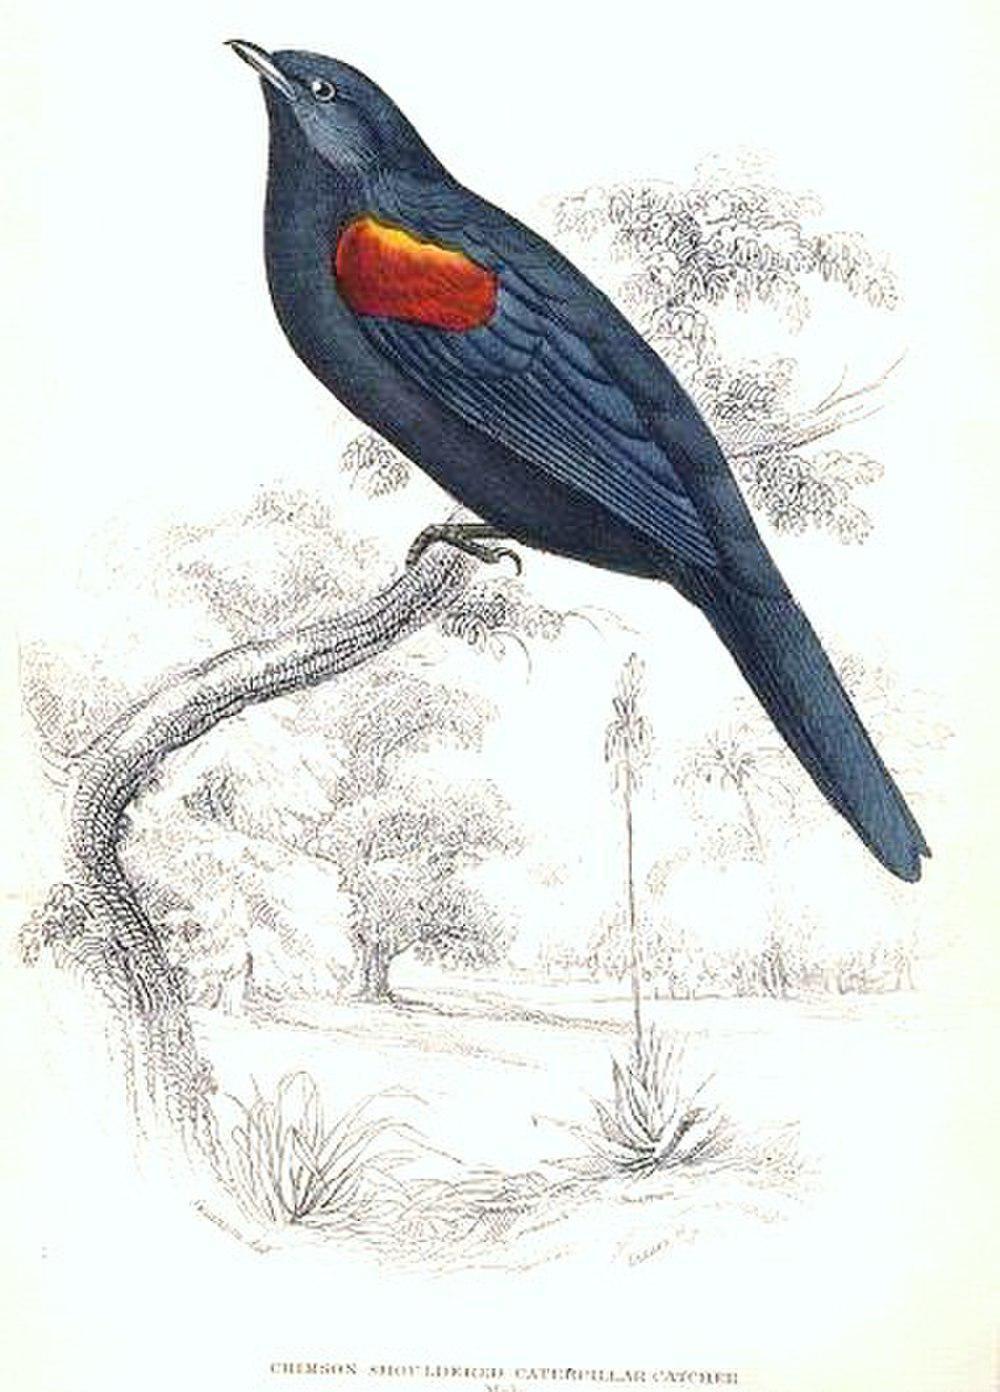 红肩鹃鵙 / Red-shouldered Cuckooshrike / Campephaga phoenicea